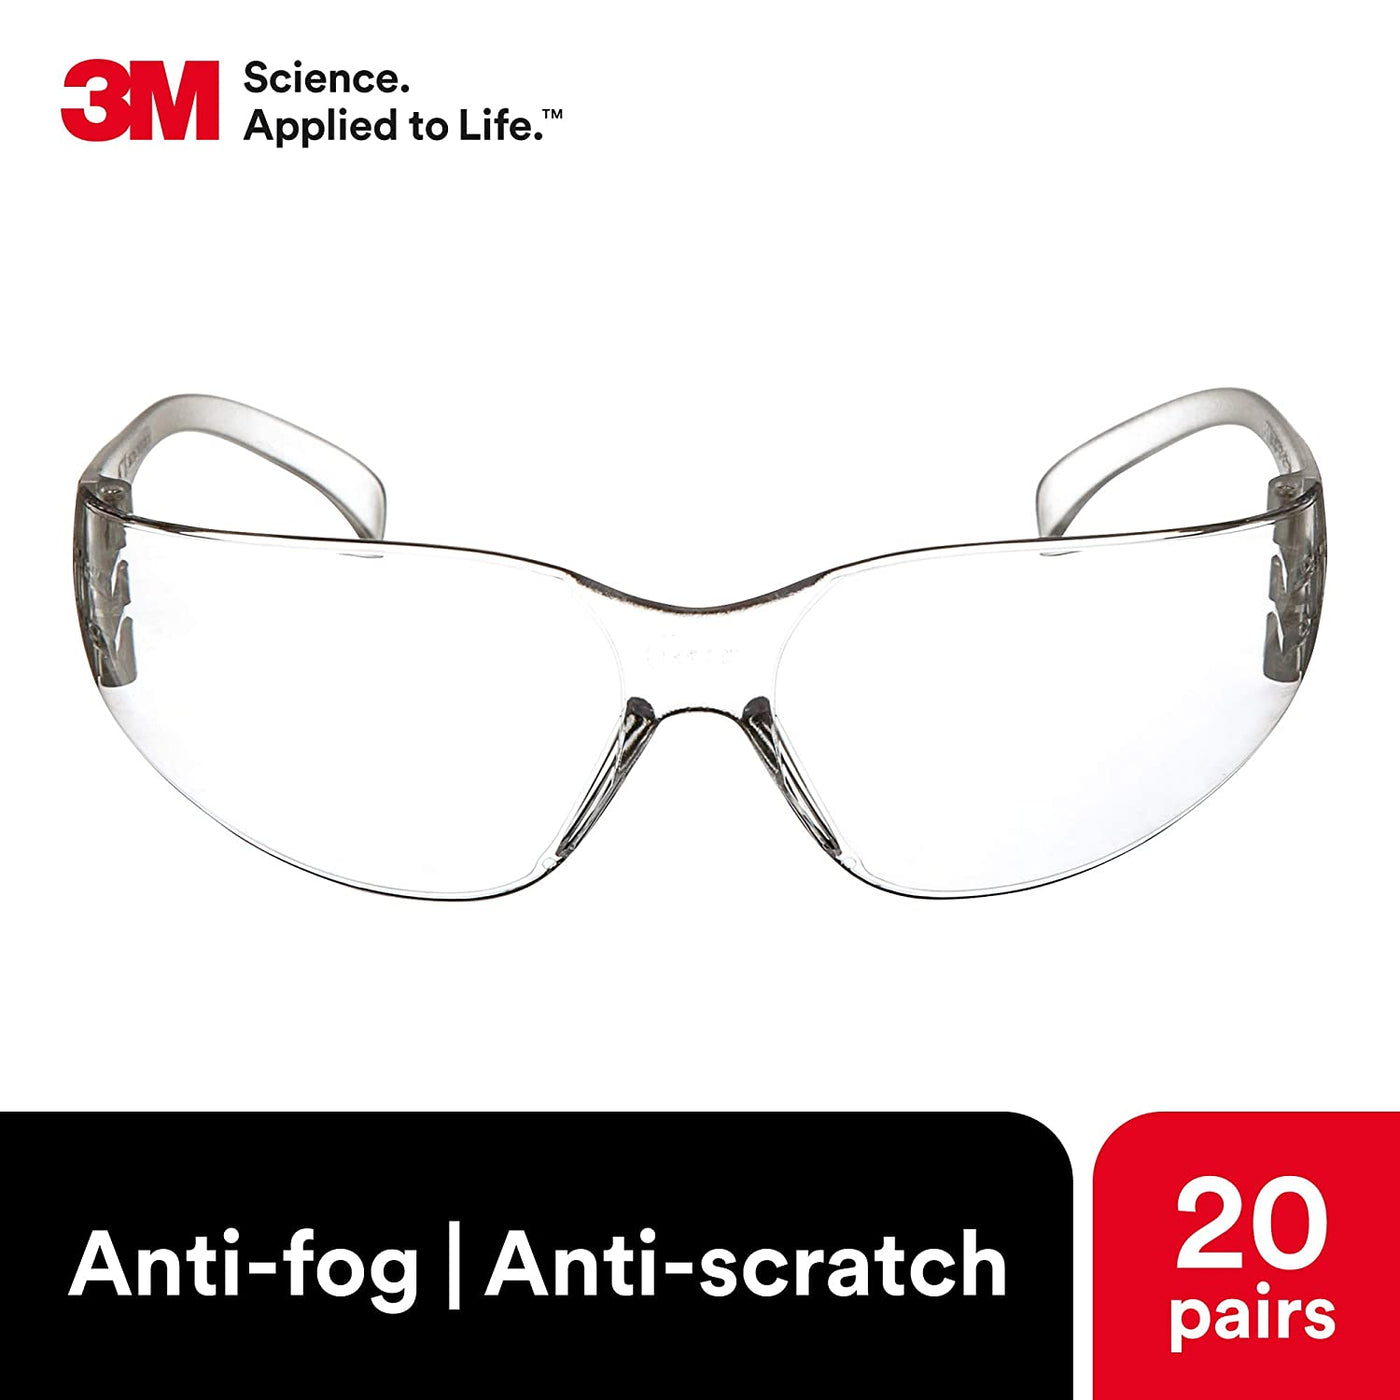 Safety Glasses 3M Virtua Protective Eyewear